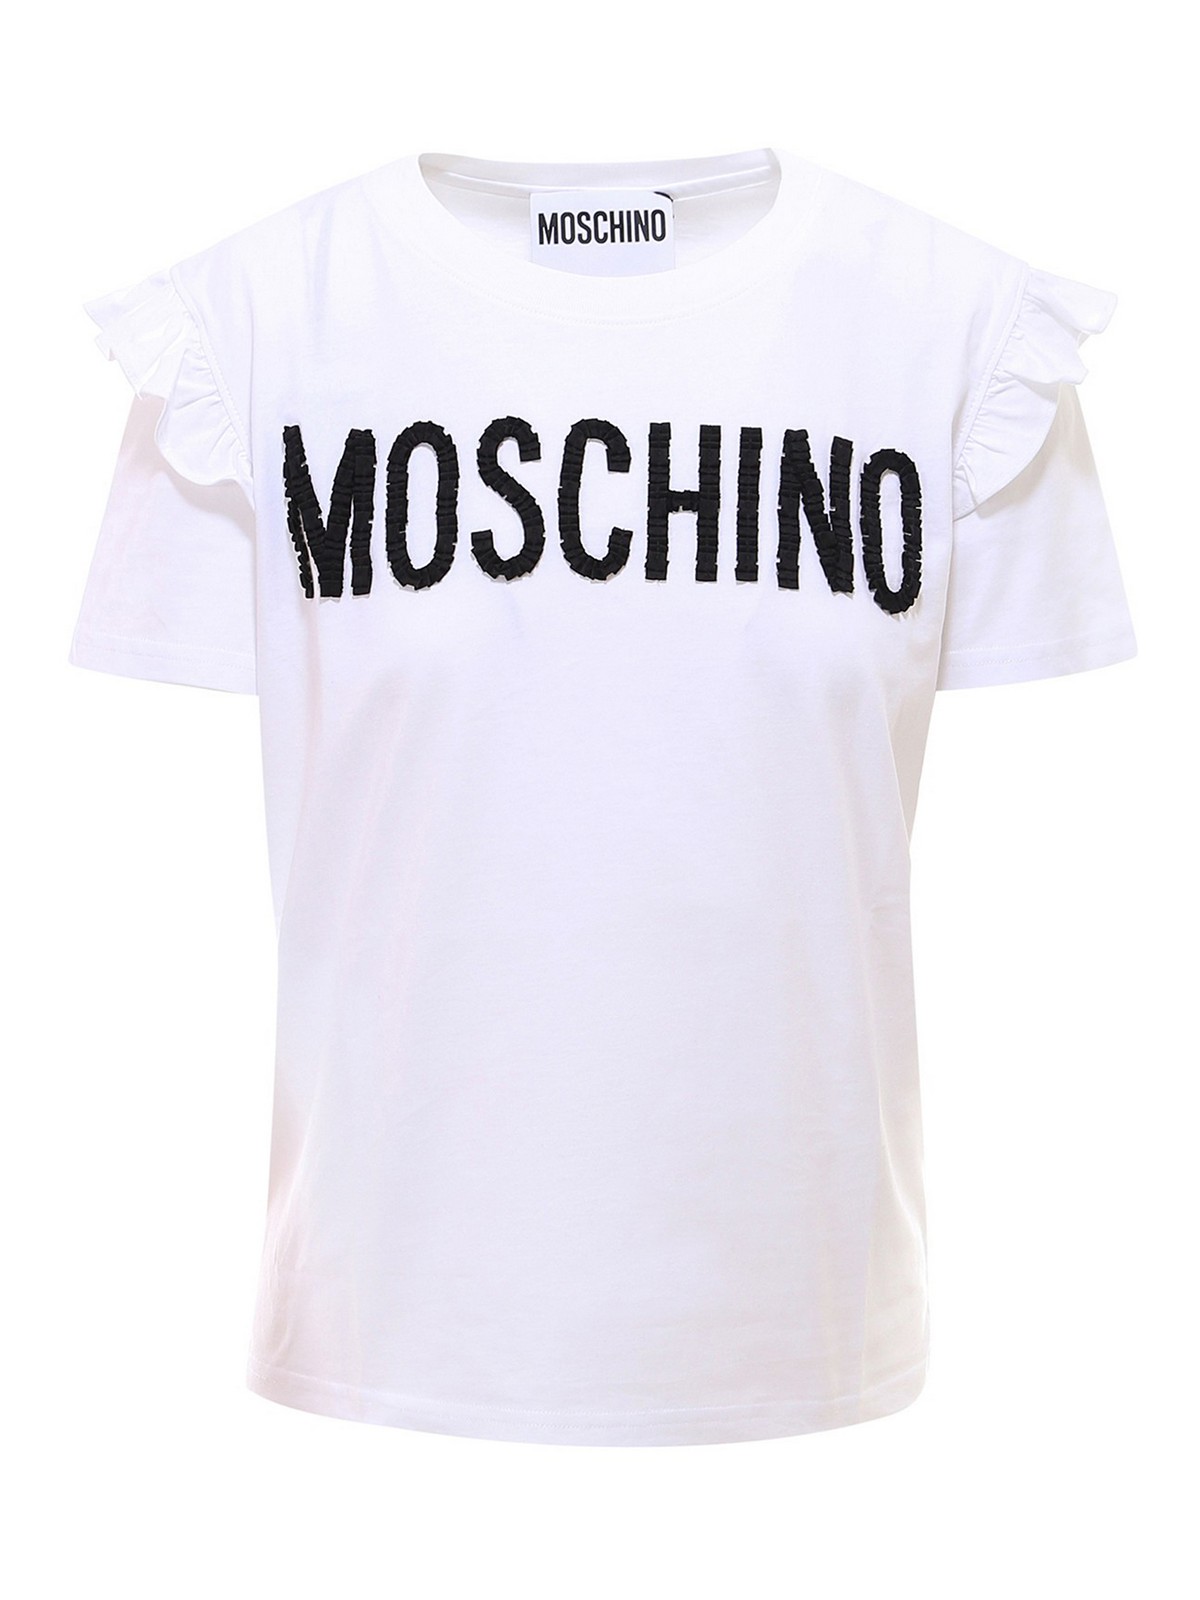 clothing brand moschino